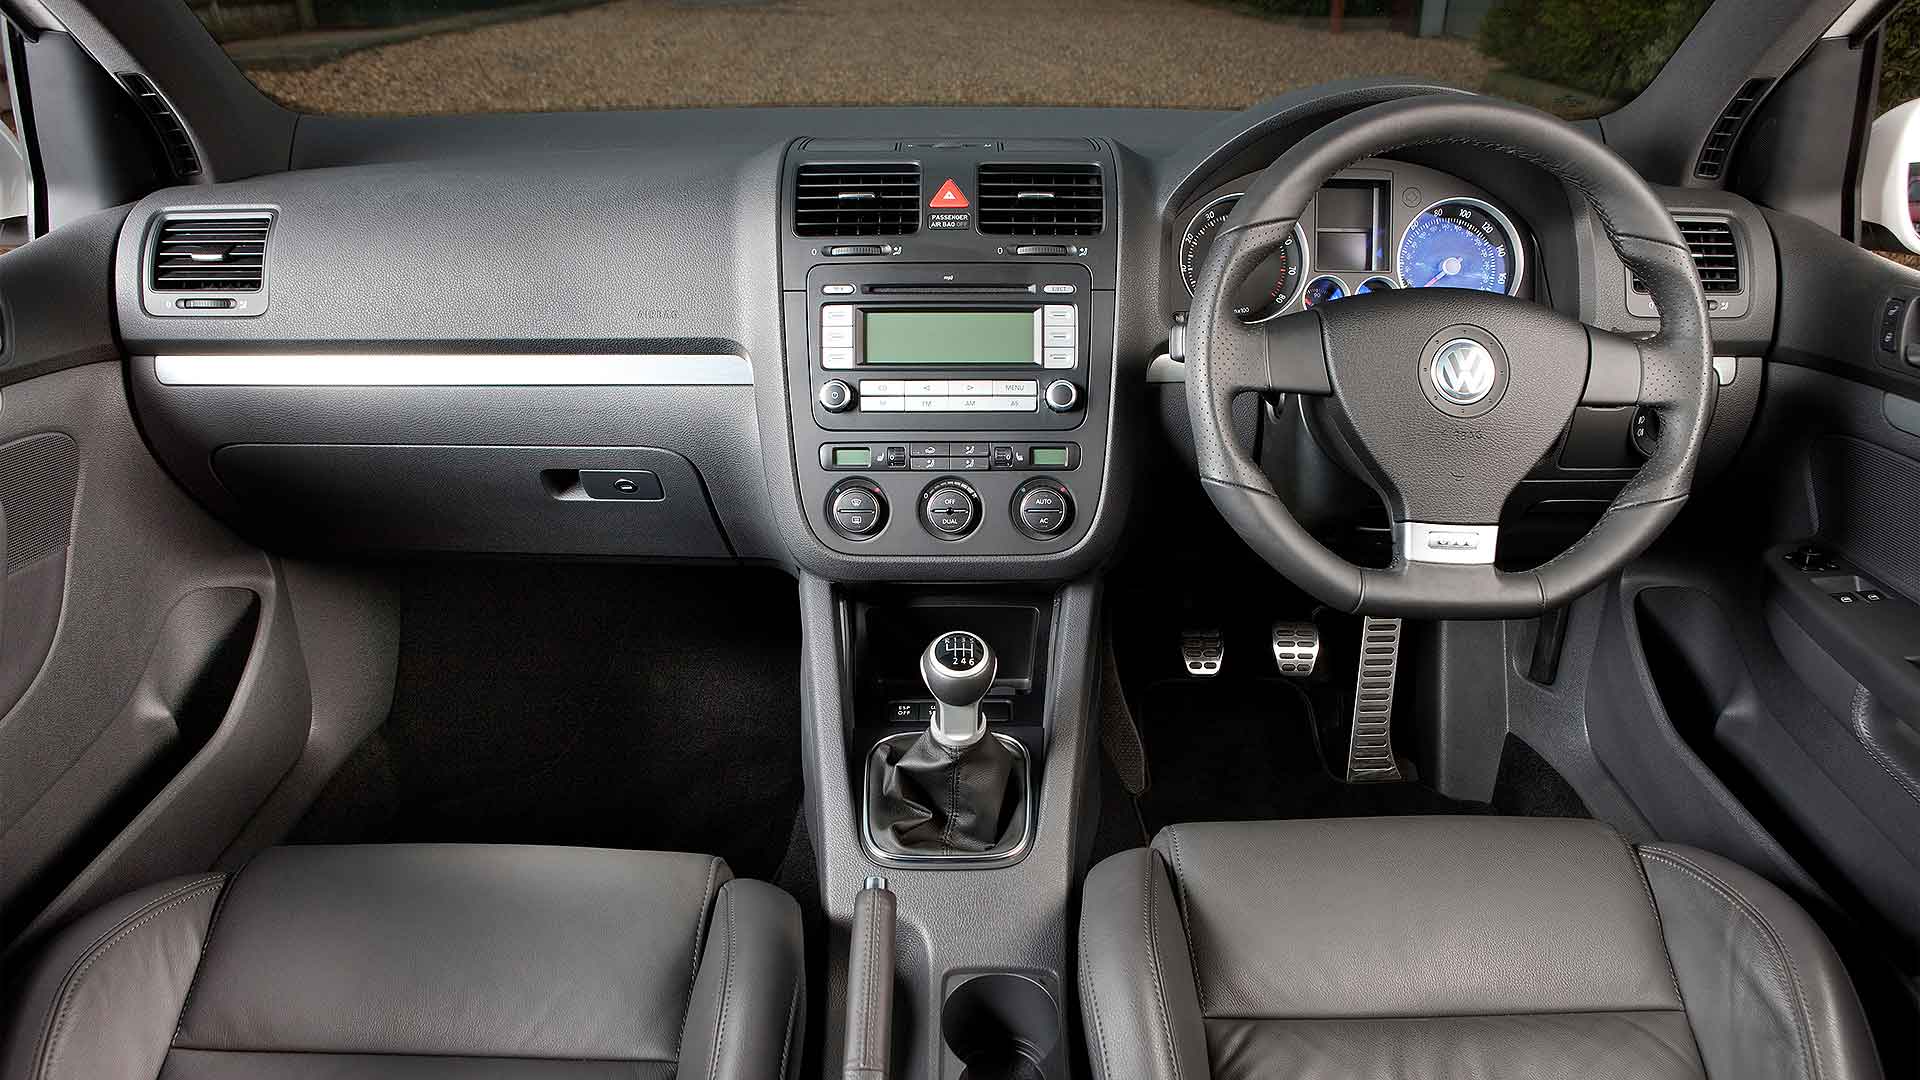 2004 Volkswagen Golf GTI Mk5: Retro Road Test